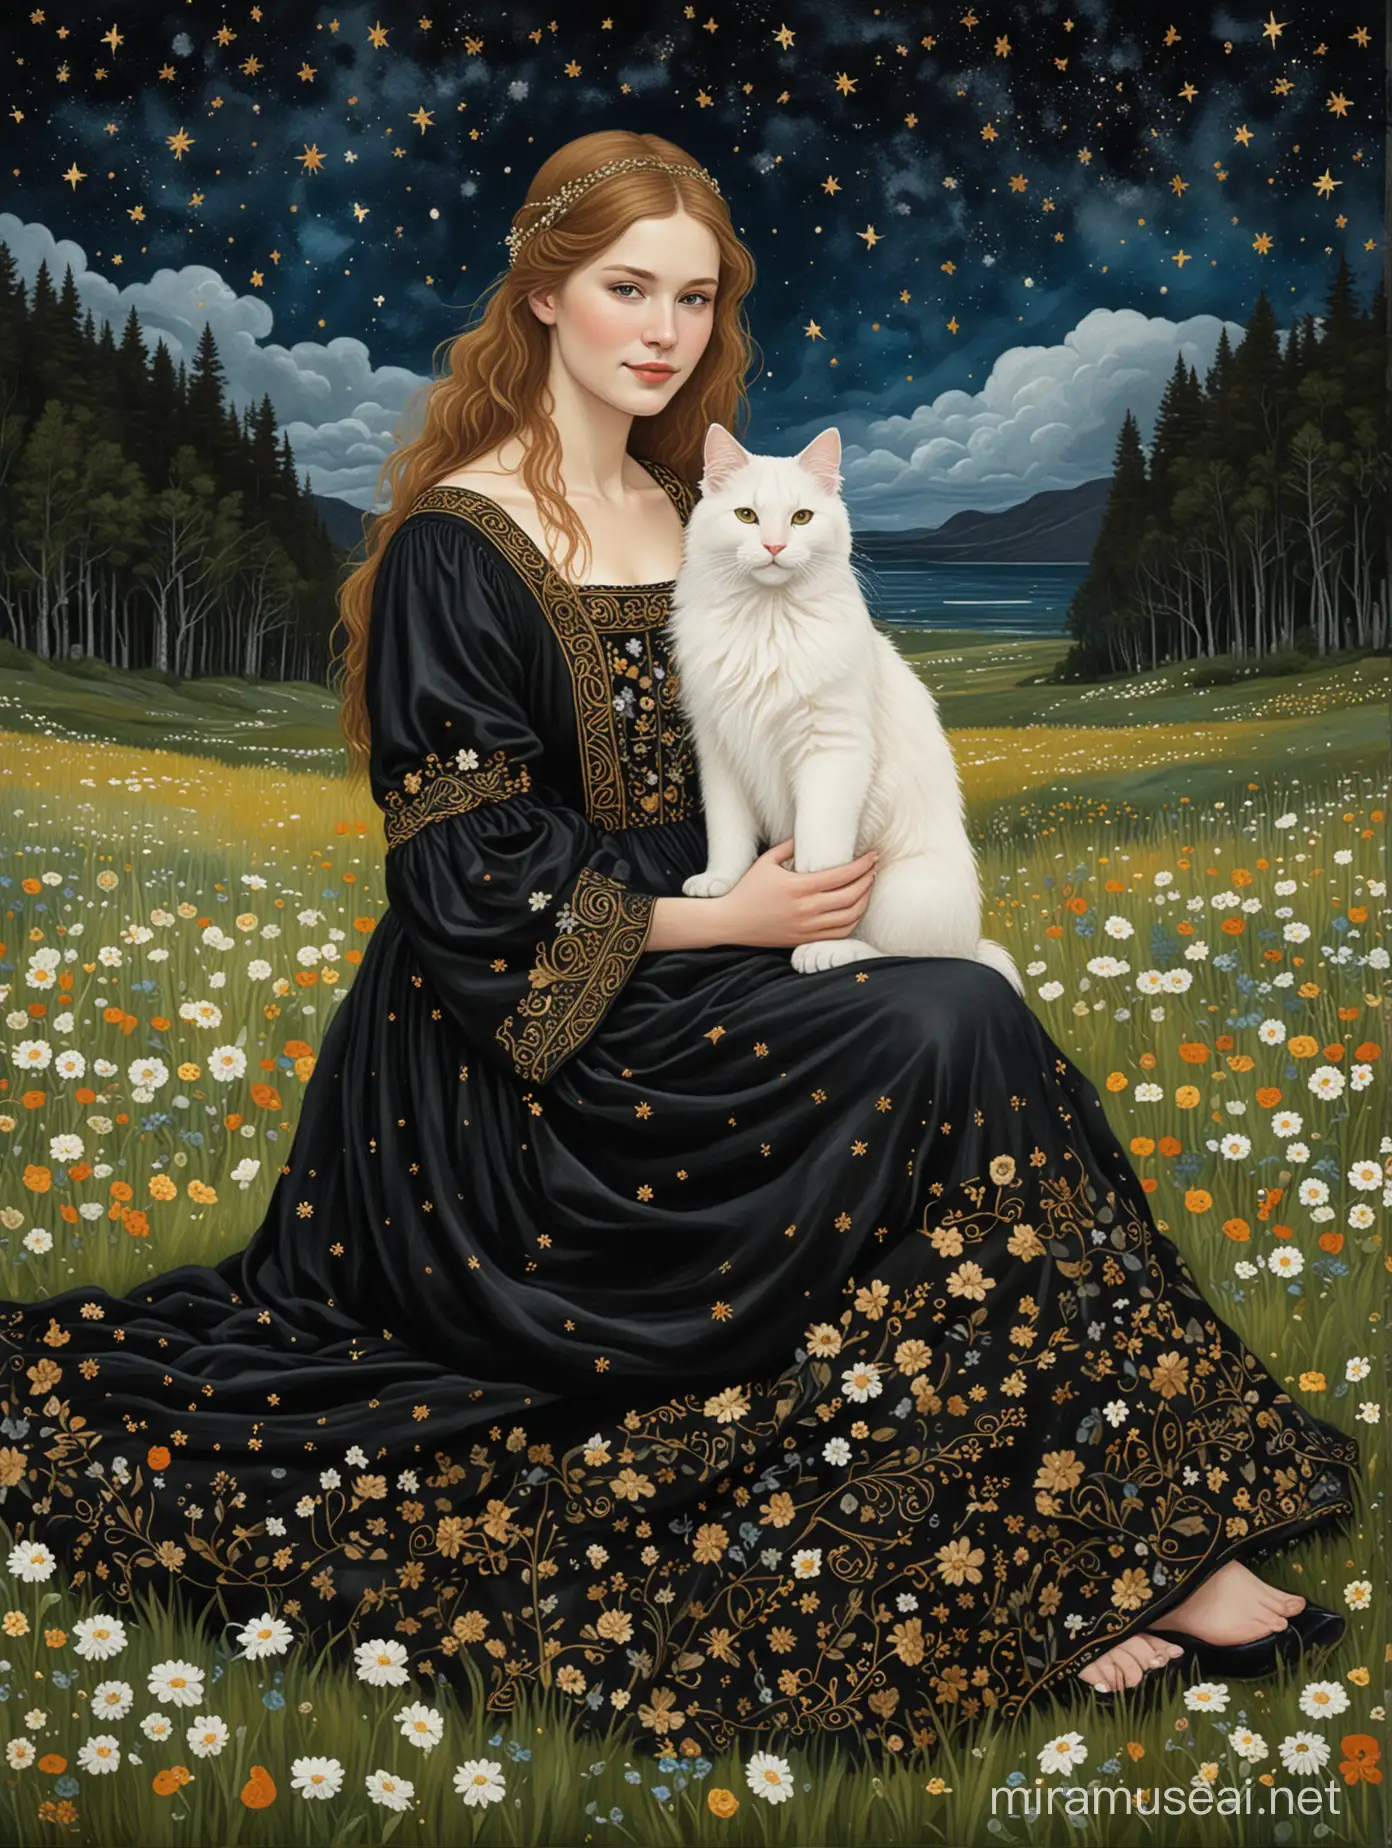 Grafika ma bordiury z floraturami w stylu celtyckim. Grafika jest w stylu malarskim Gustava Klimta. Grafika przedstawia młodą, usmiechniętą, piękną, średniowieczną Kate Bekinsale w czarnej sukience, która siedzi na kwietnej trawie i trzyma na kolanach białego norweskiego kota leśnego. Jest noc i na ciemnym niebie świecą tylko gwiazdy. W tle brzozowy zagajnik i odległe morze.